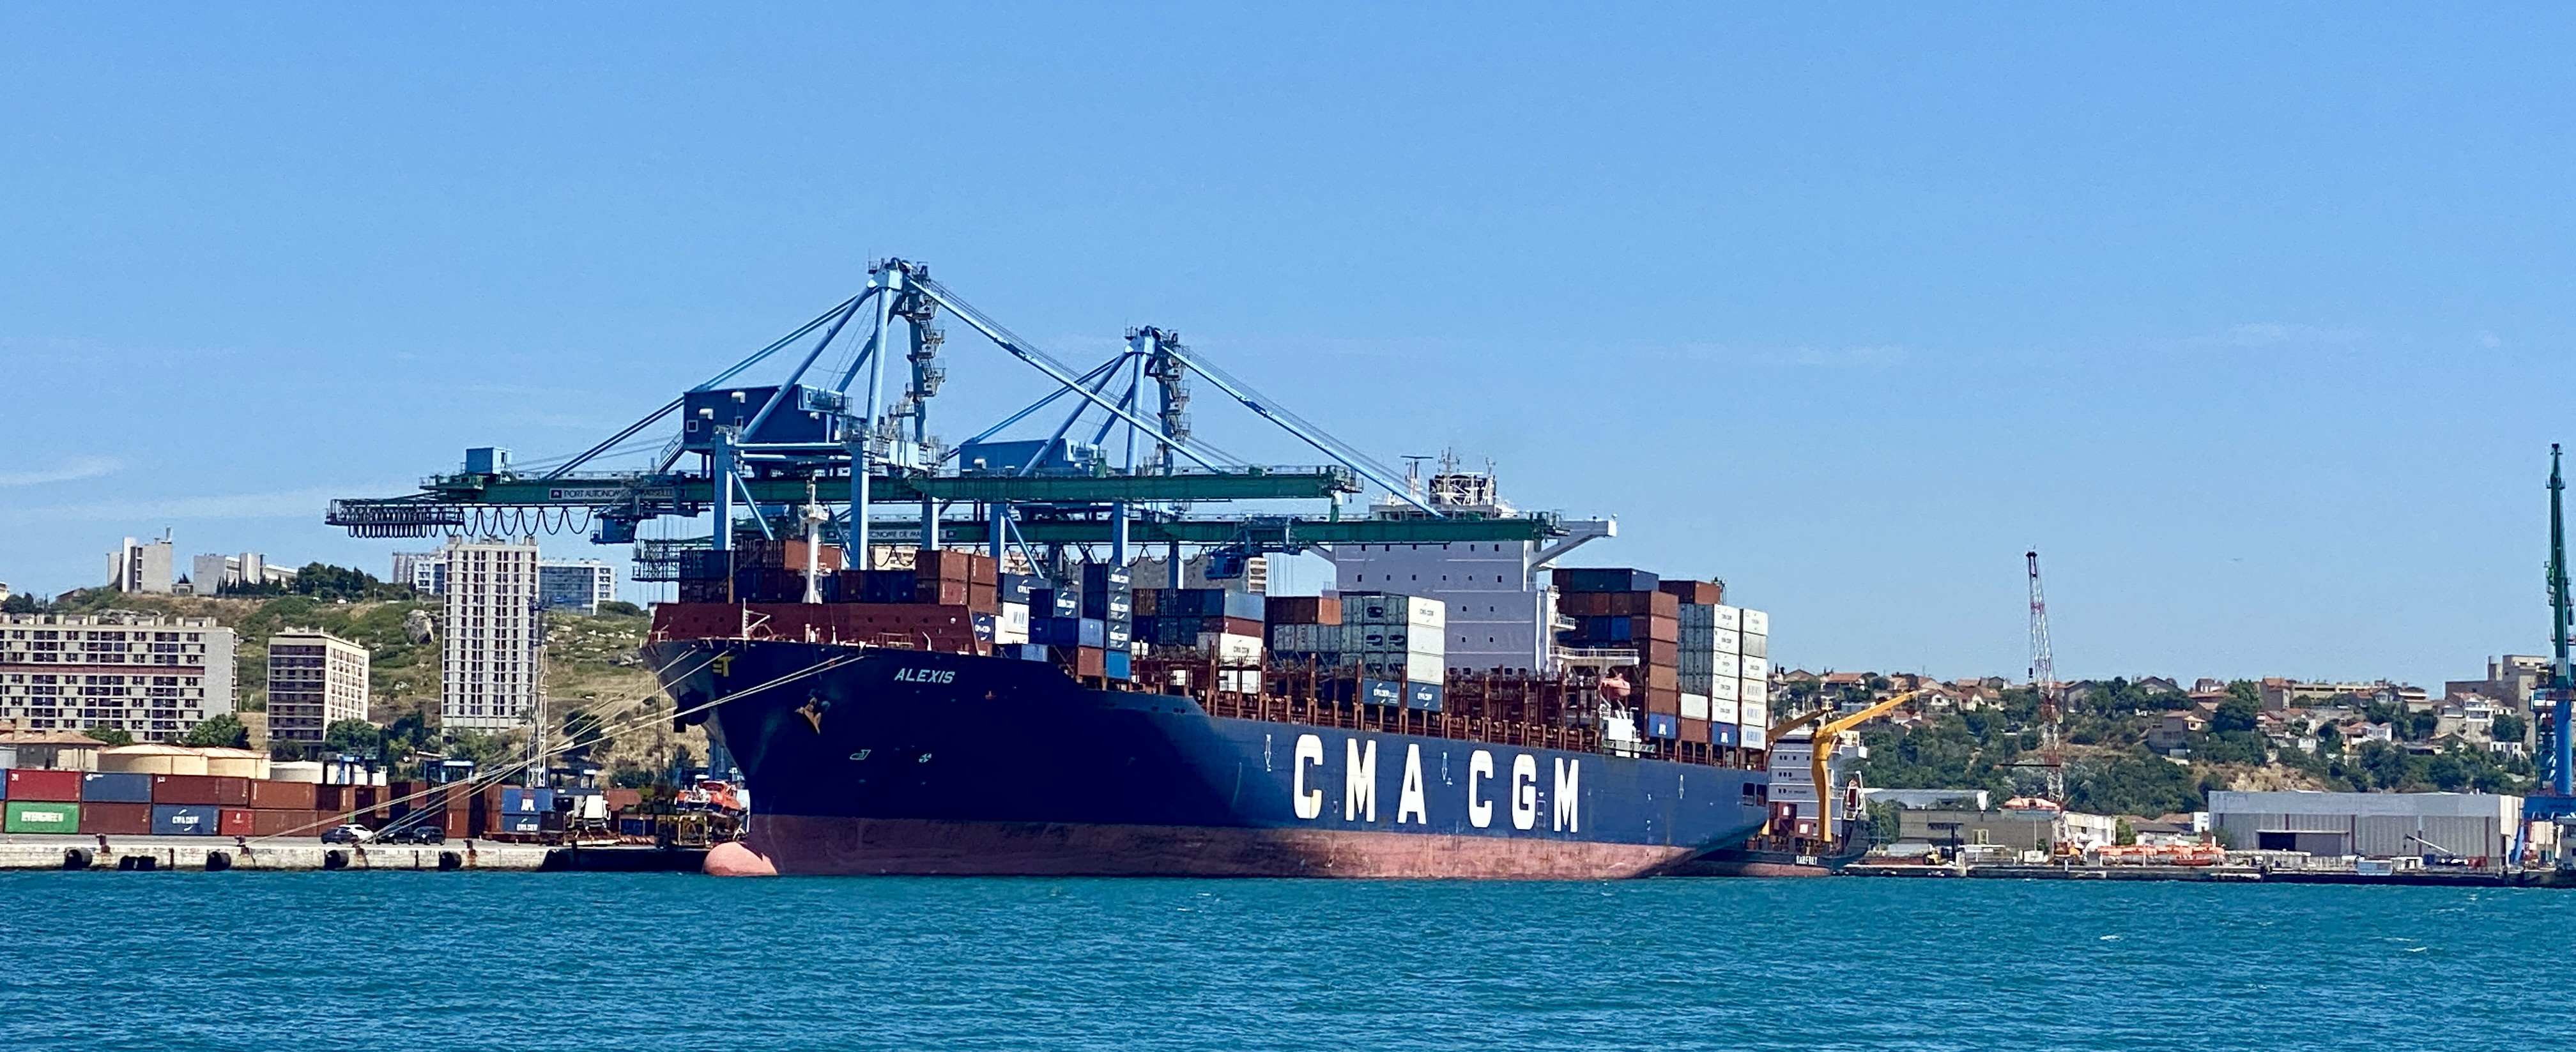 CMA CGM a augmenté la capacité de la flotte opérée de 11% depuis le 31 décembre 2019. ©NBC